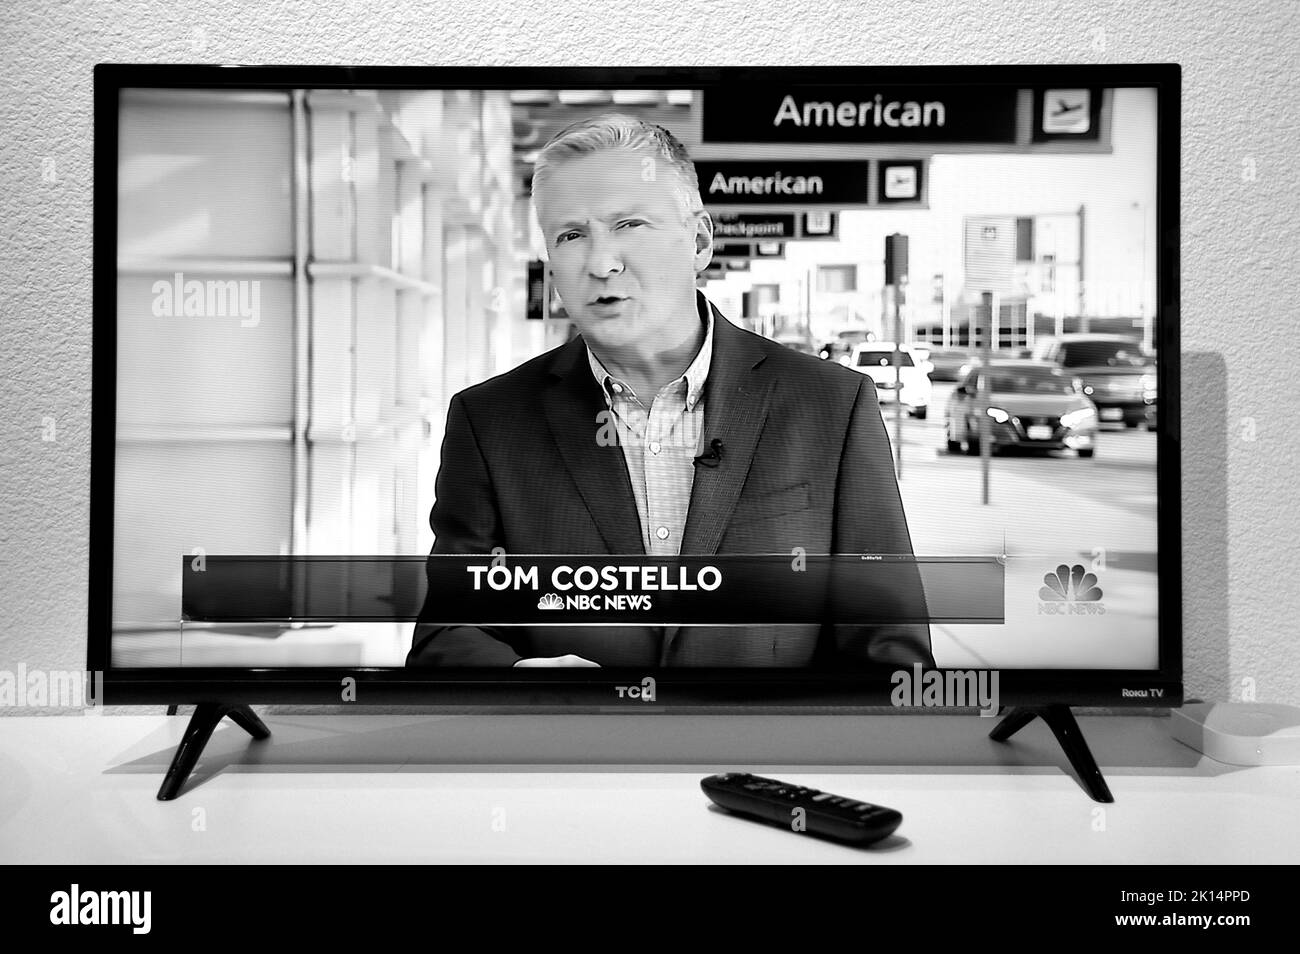 Une capture d'écran du journaliste de télévision de la NBC, Tom Costello, qui rapporte en direct de l'aéroport national de Washington Ronald Reagan à Washington, D.C. Banque D'Images